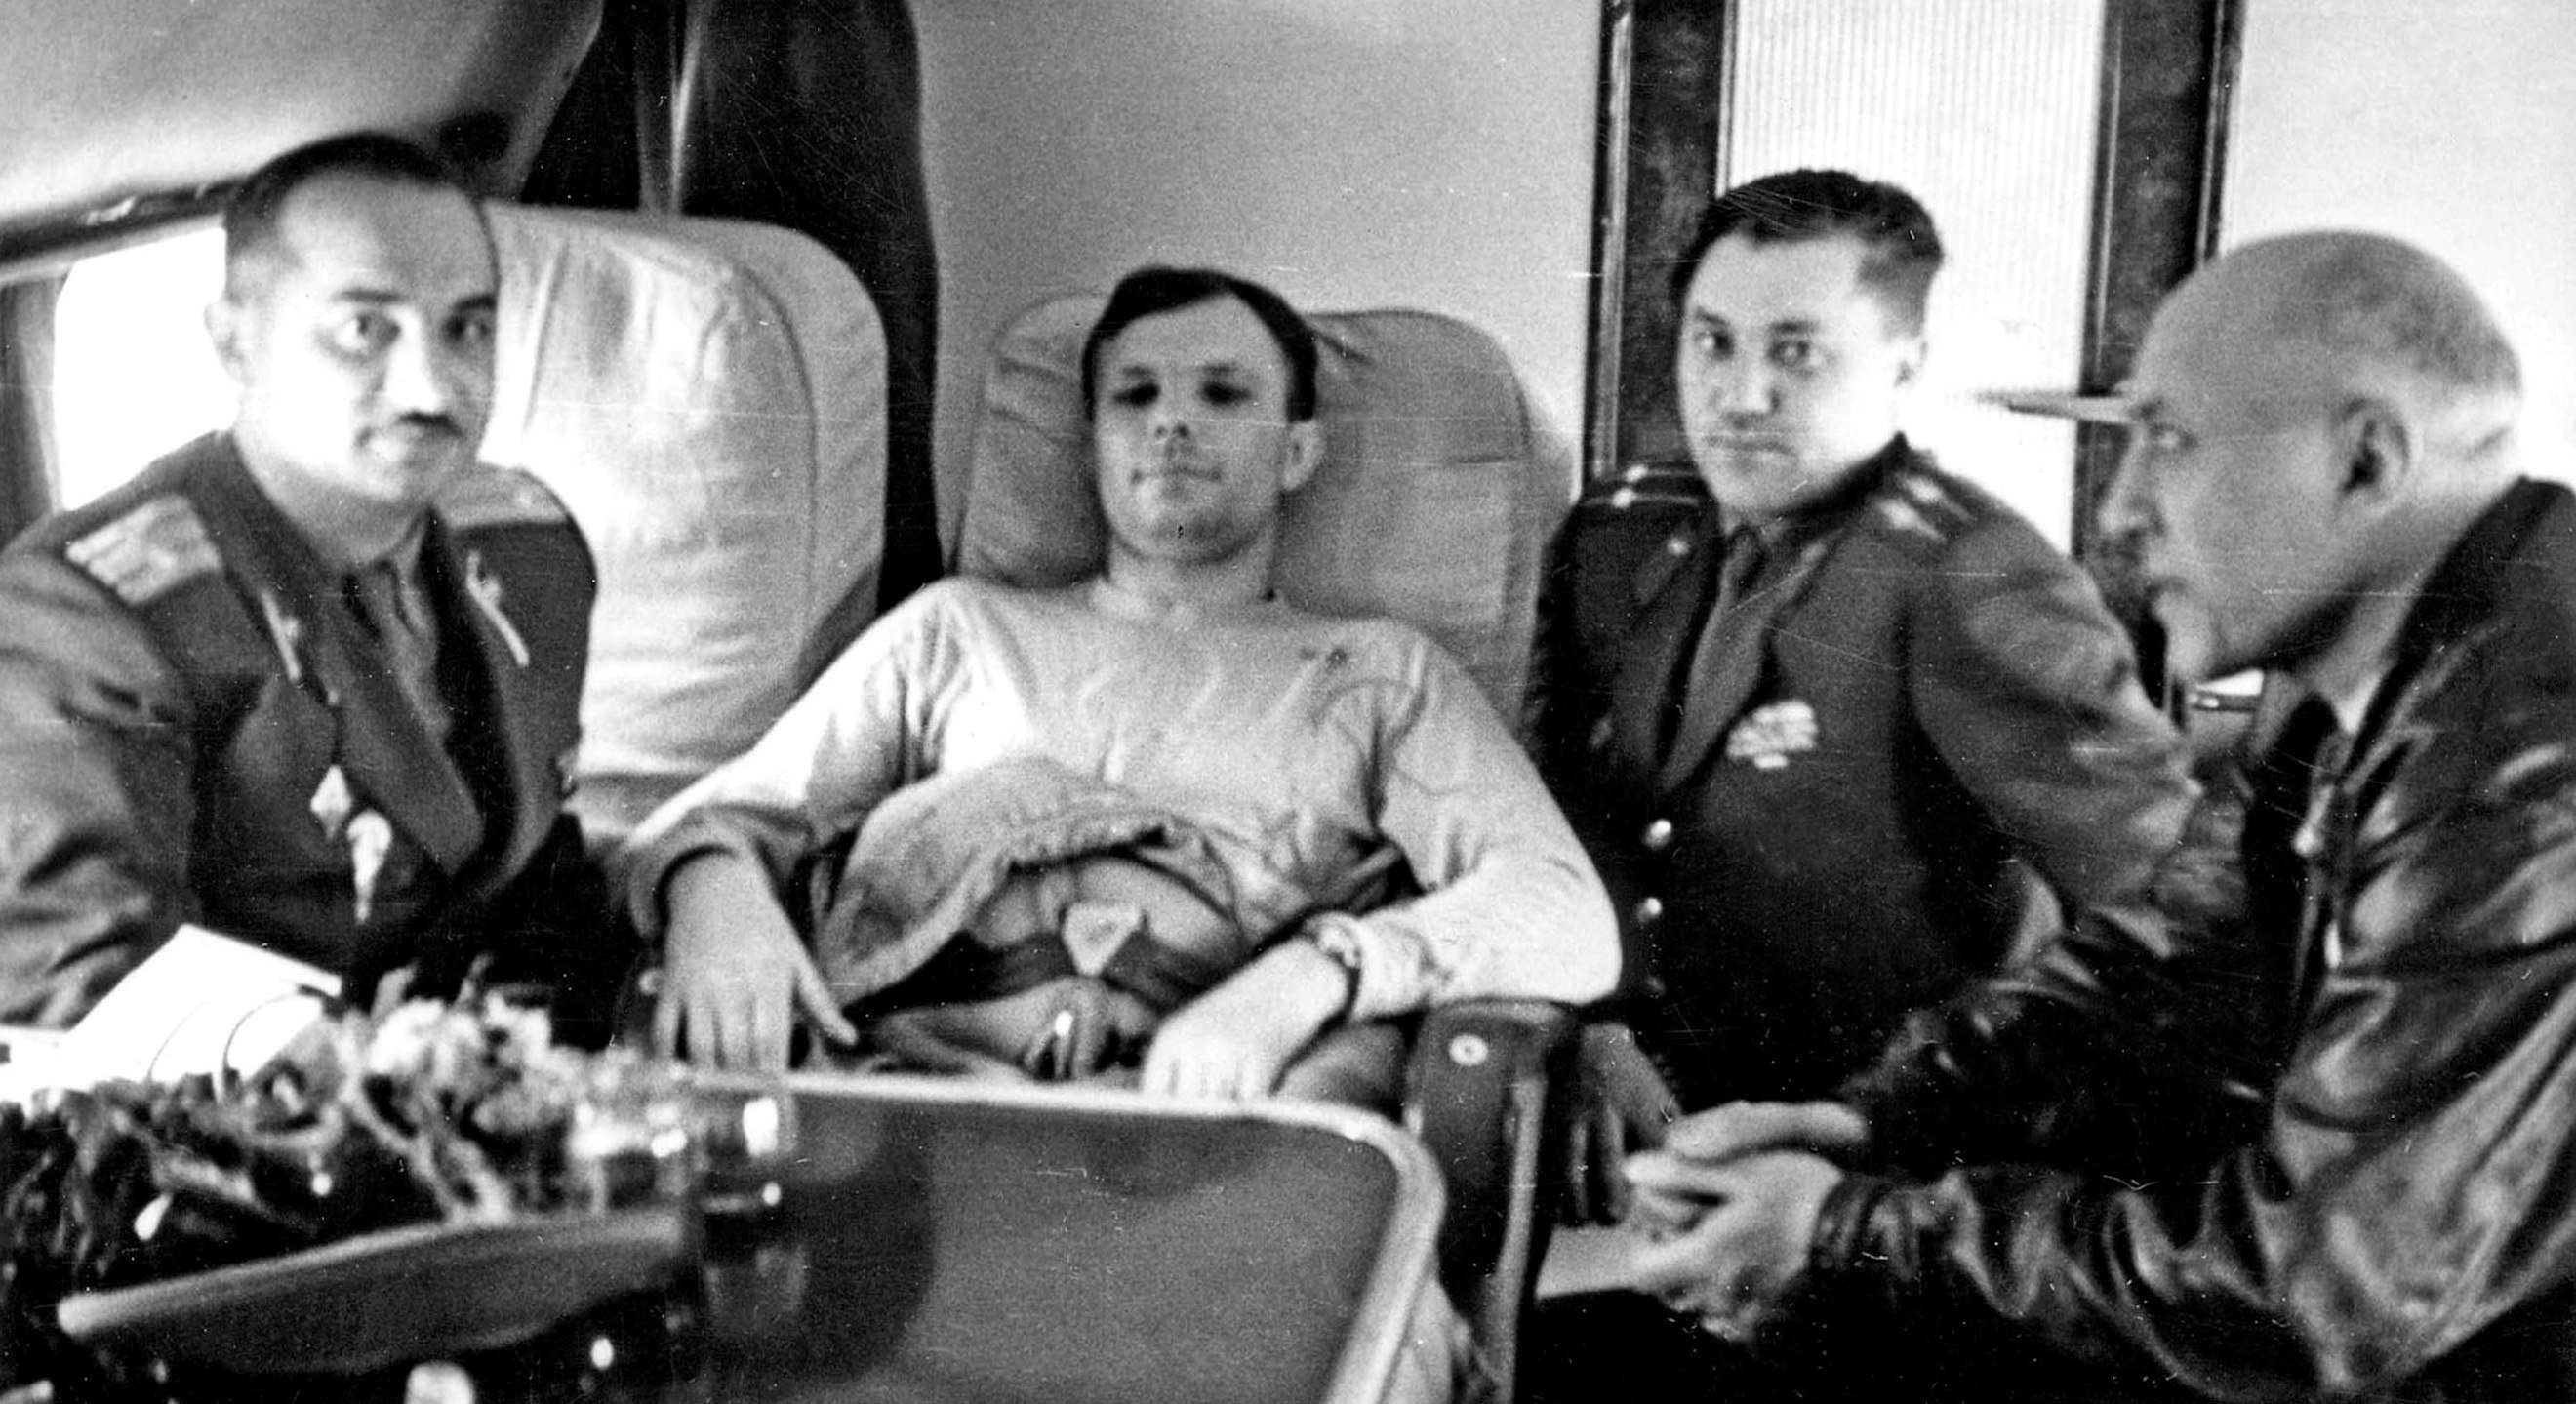 Гагарин сразу после приземления. Приземление Гагарина 1961. Фото приземления Юрия Гагарина.